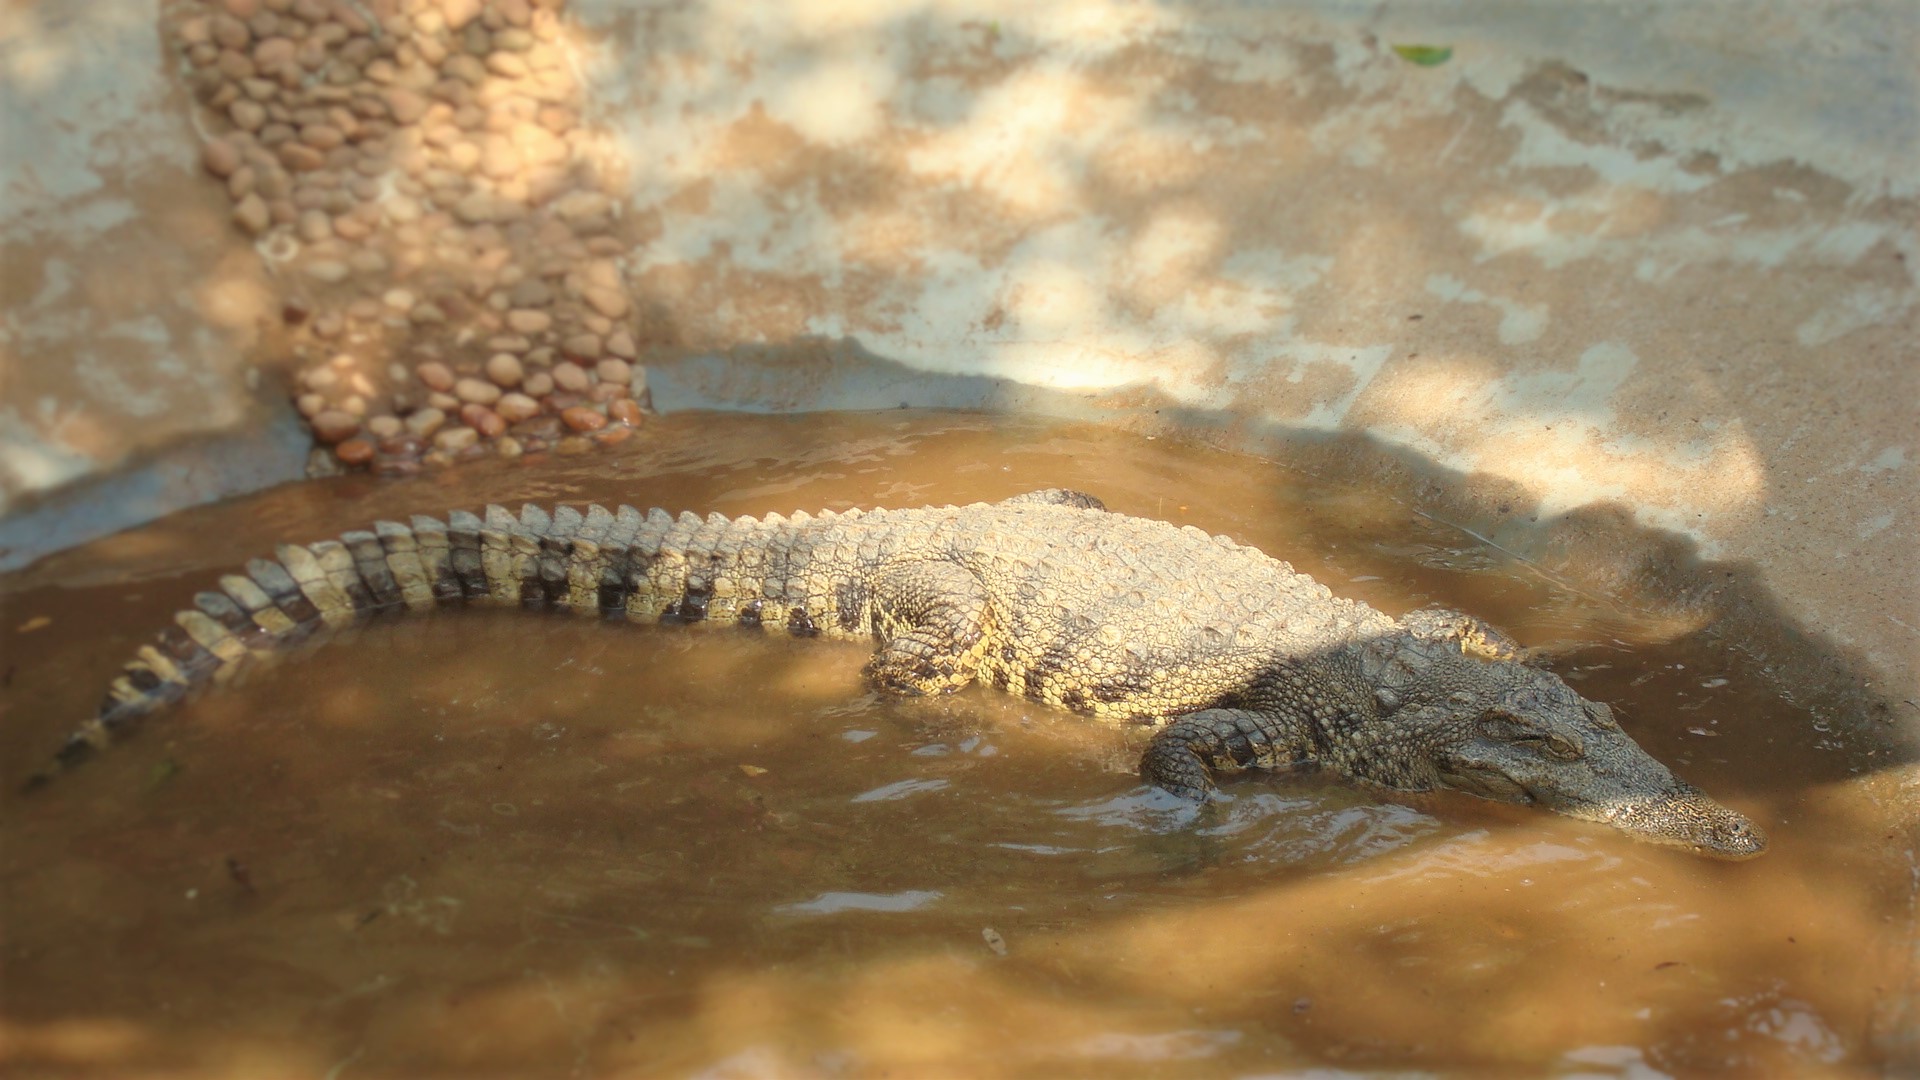 Crocodilia - Wikipedia